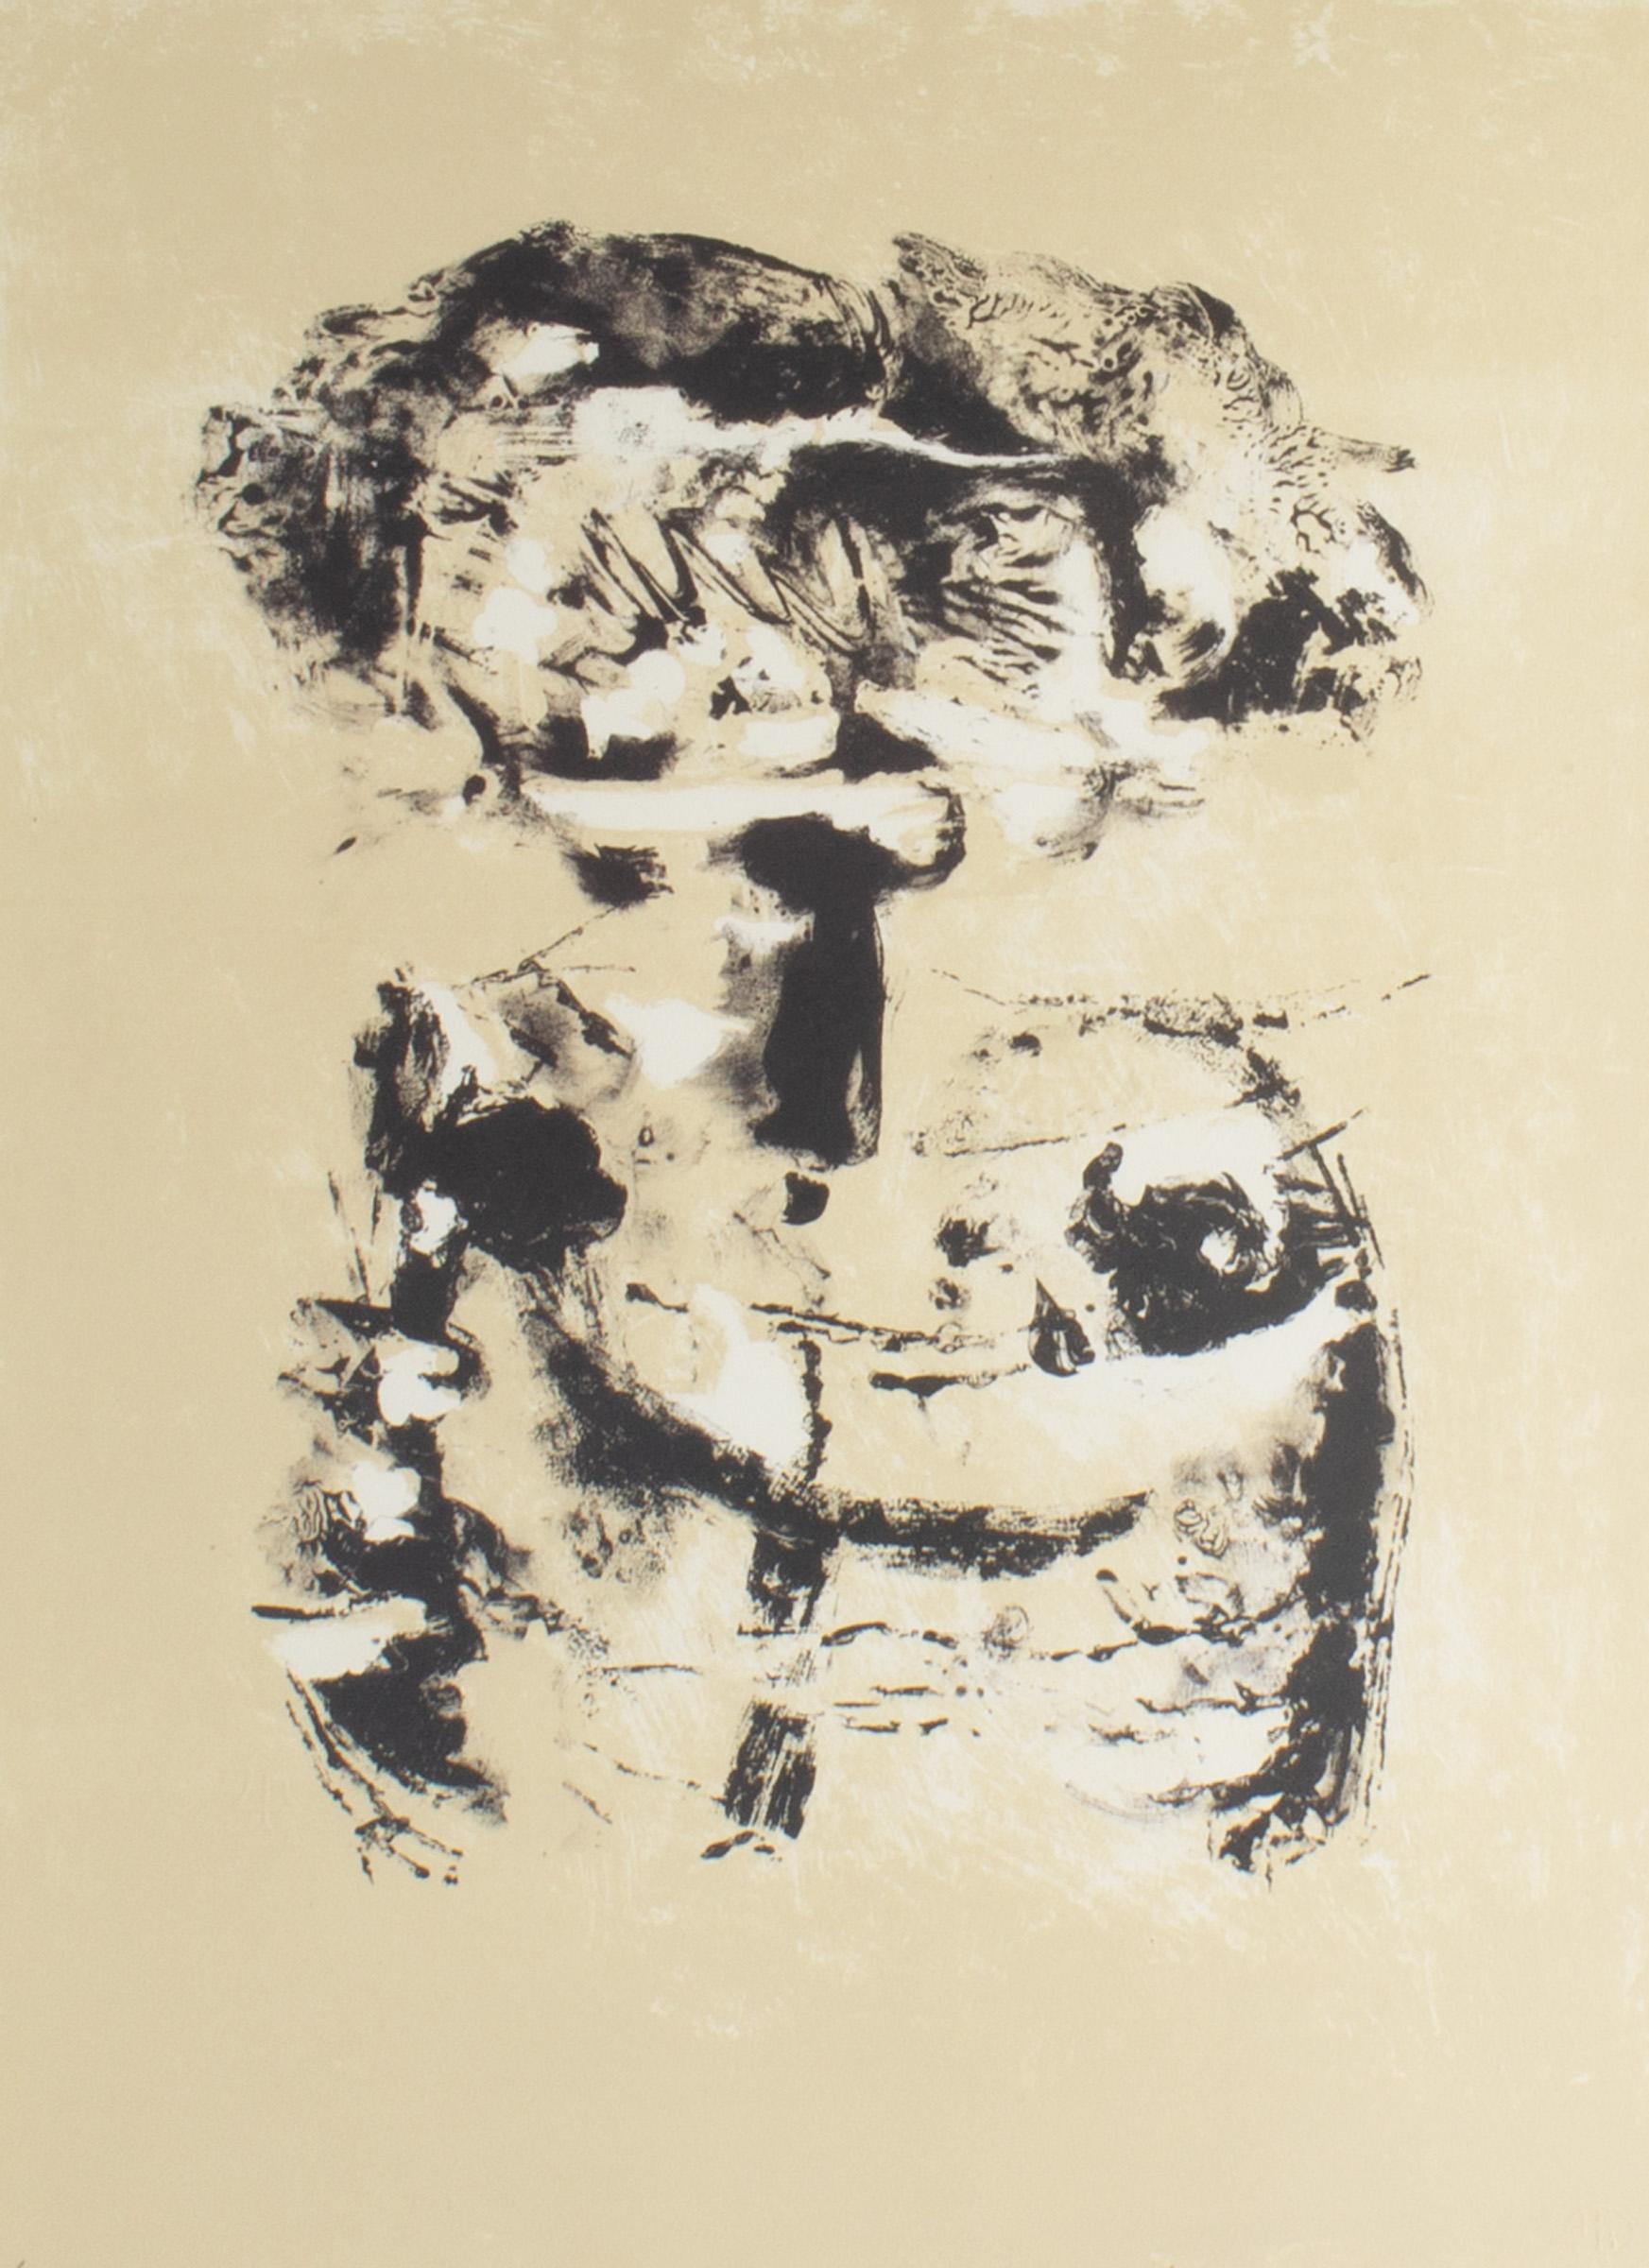 Lithographie à tirage limité des années 1960 intitulée Salt IV de l'artiste russo-américaine Adja Yunkers (1900-1983). Cette œuvre abstraite représente une forme en noir et blanc sur un fond beige. Signé en bas à droite, le tirage est numéroté